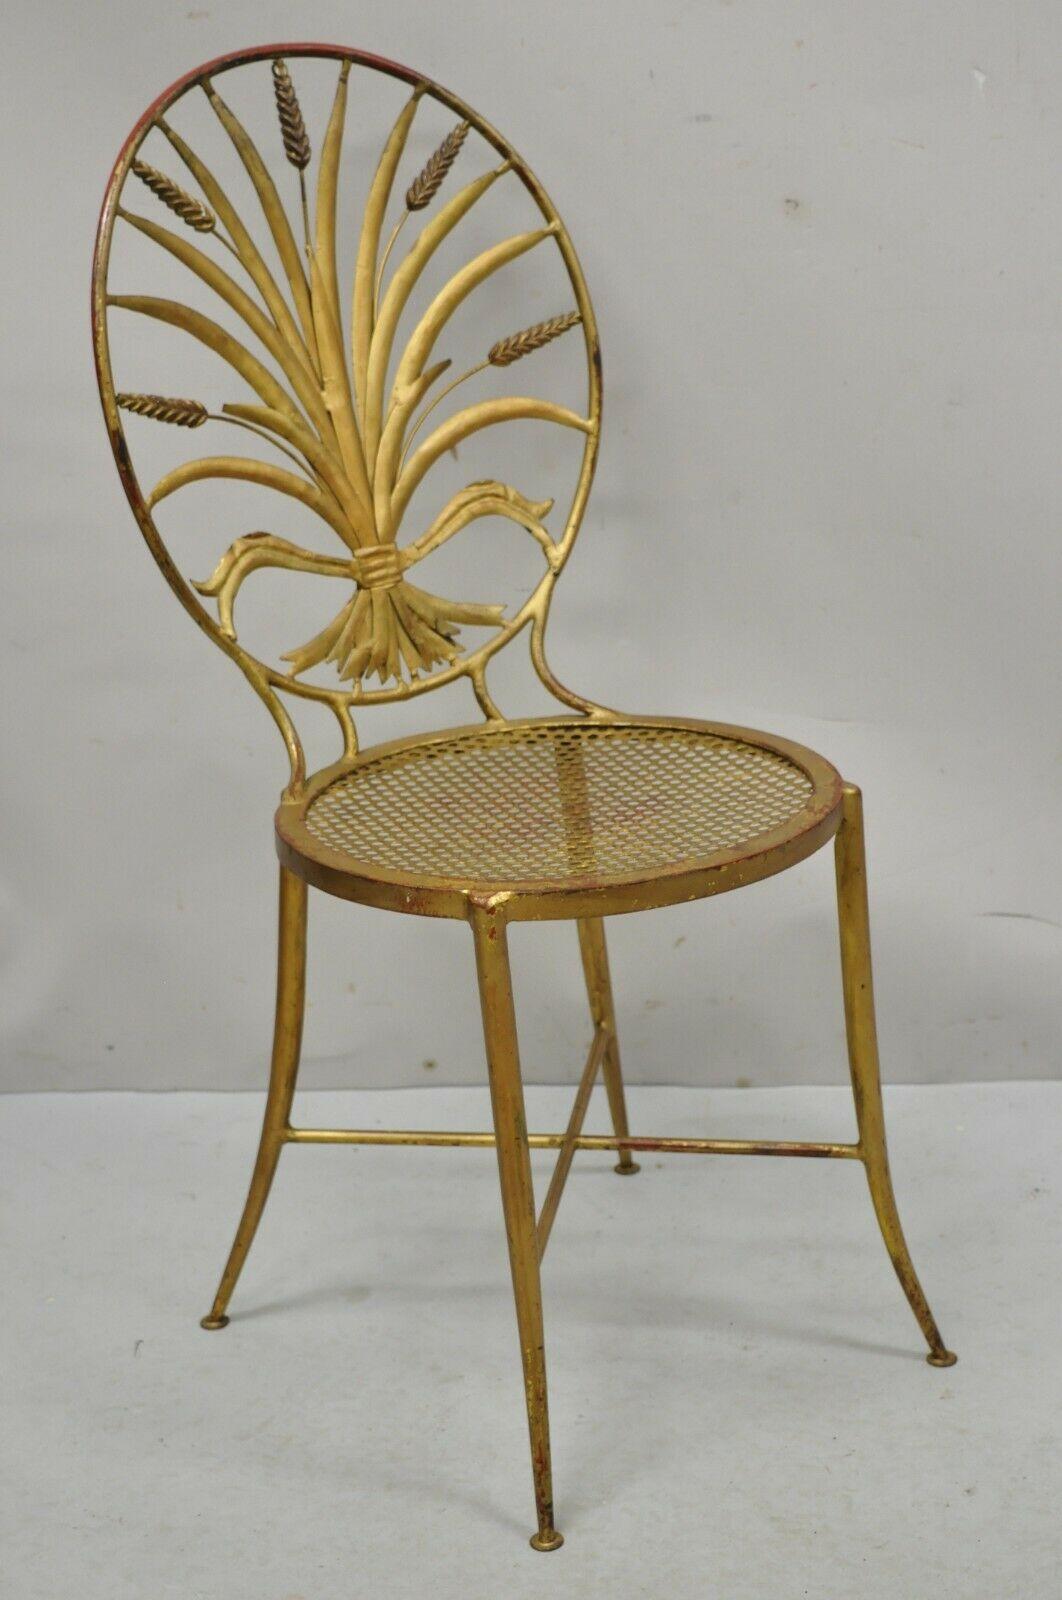 Chaise d'appoint Salvador de style Hollywood Regency en métal tole doré à la gerbe de blé. Cet objet présente un dos ovale avec un motif de gerbe de blé, une base à croisillons, une construction en fer forgé, une finition vieillie dorée, des pieds